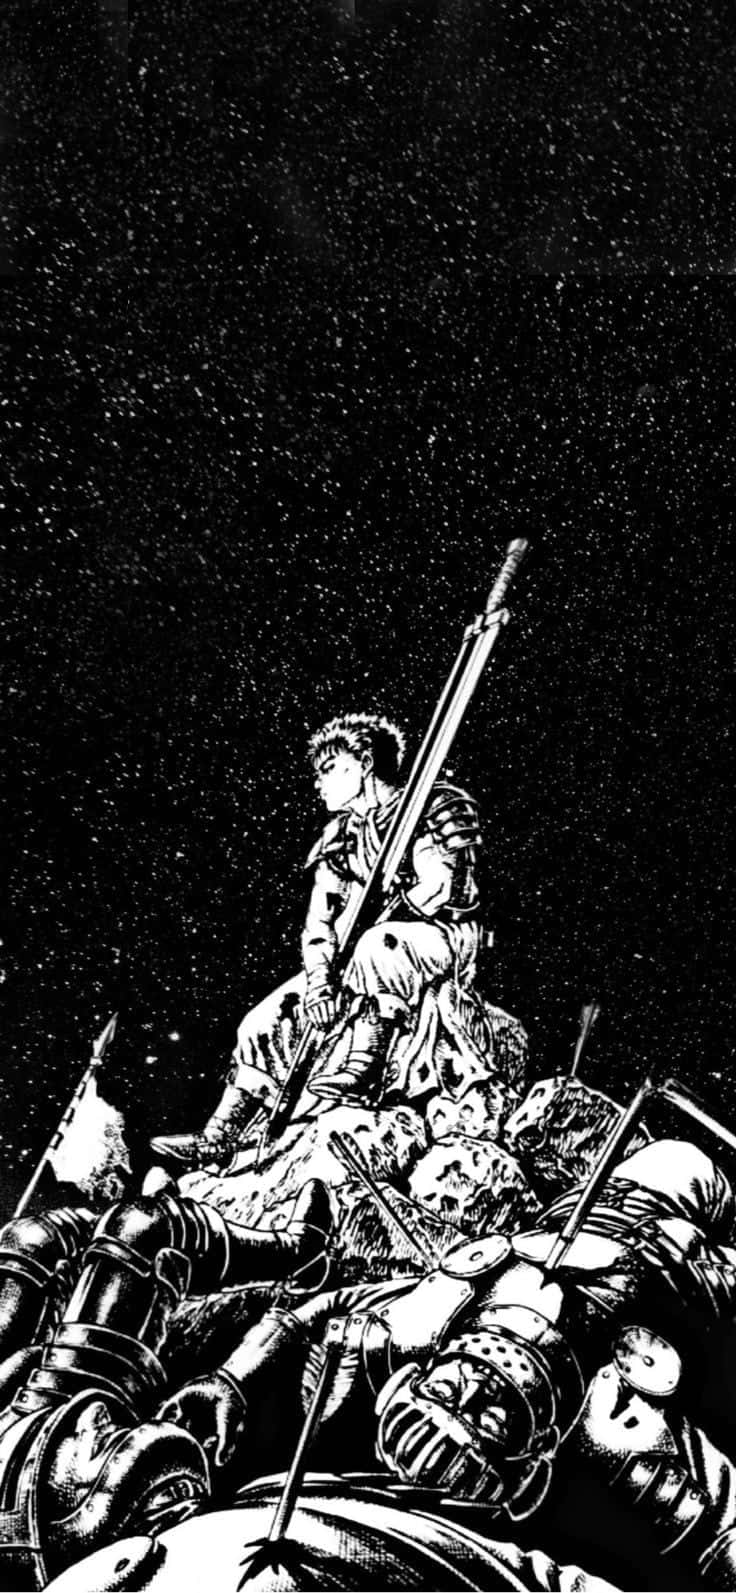 Guts, hovedpersonen i den klassiske japanske manga-serie Berserk, står højt mod en dramatisk baggrund af ild. Wallpaper